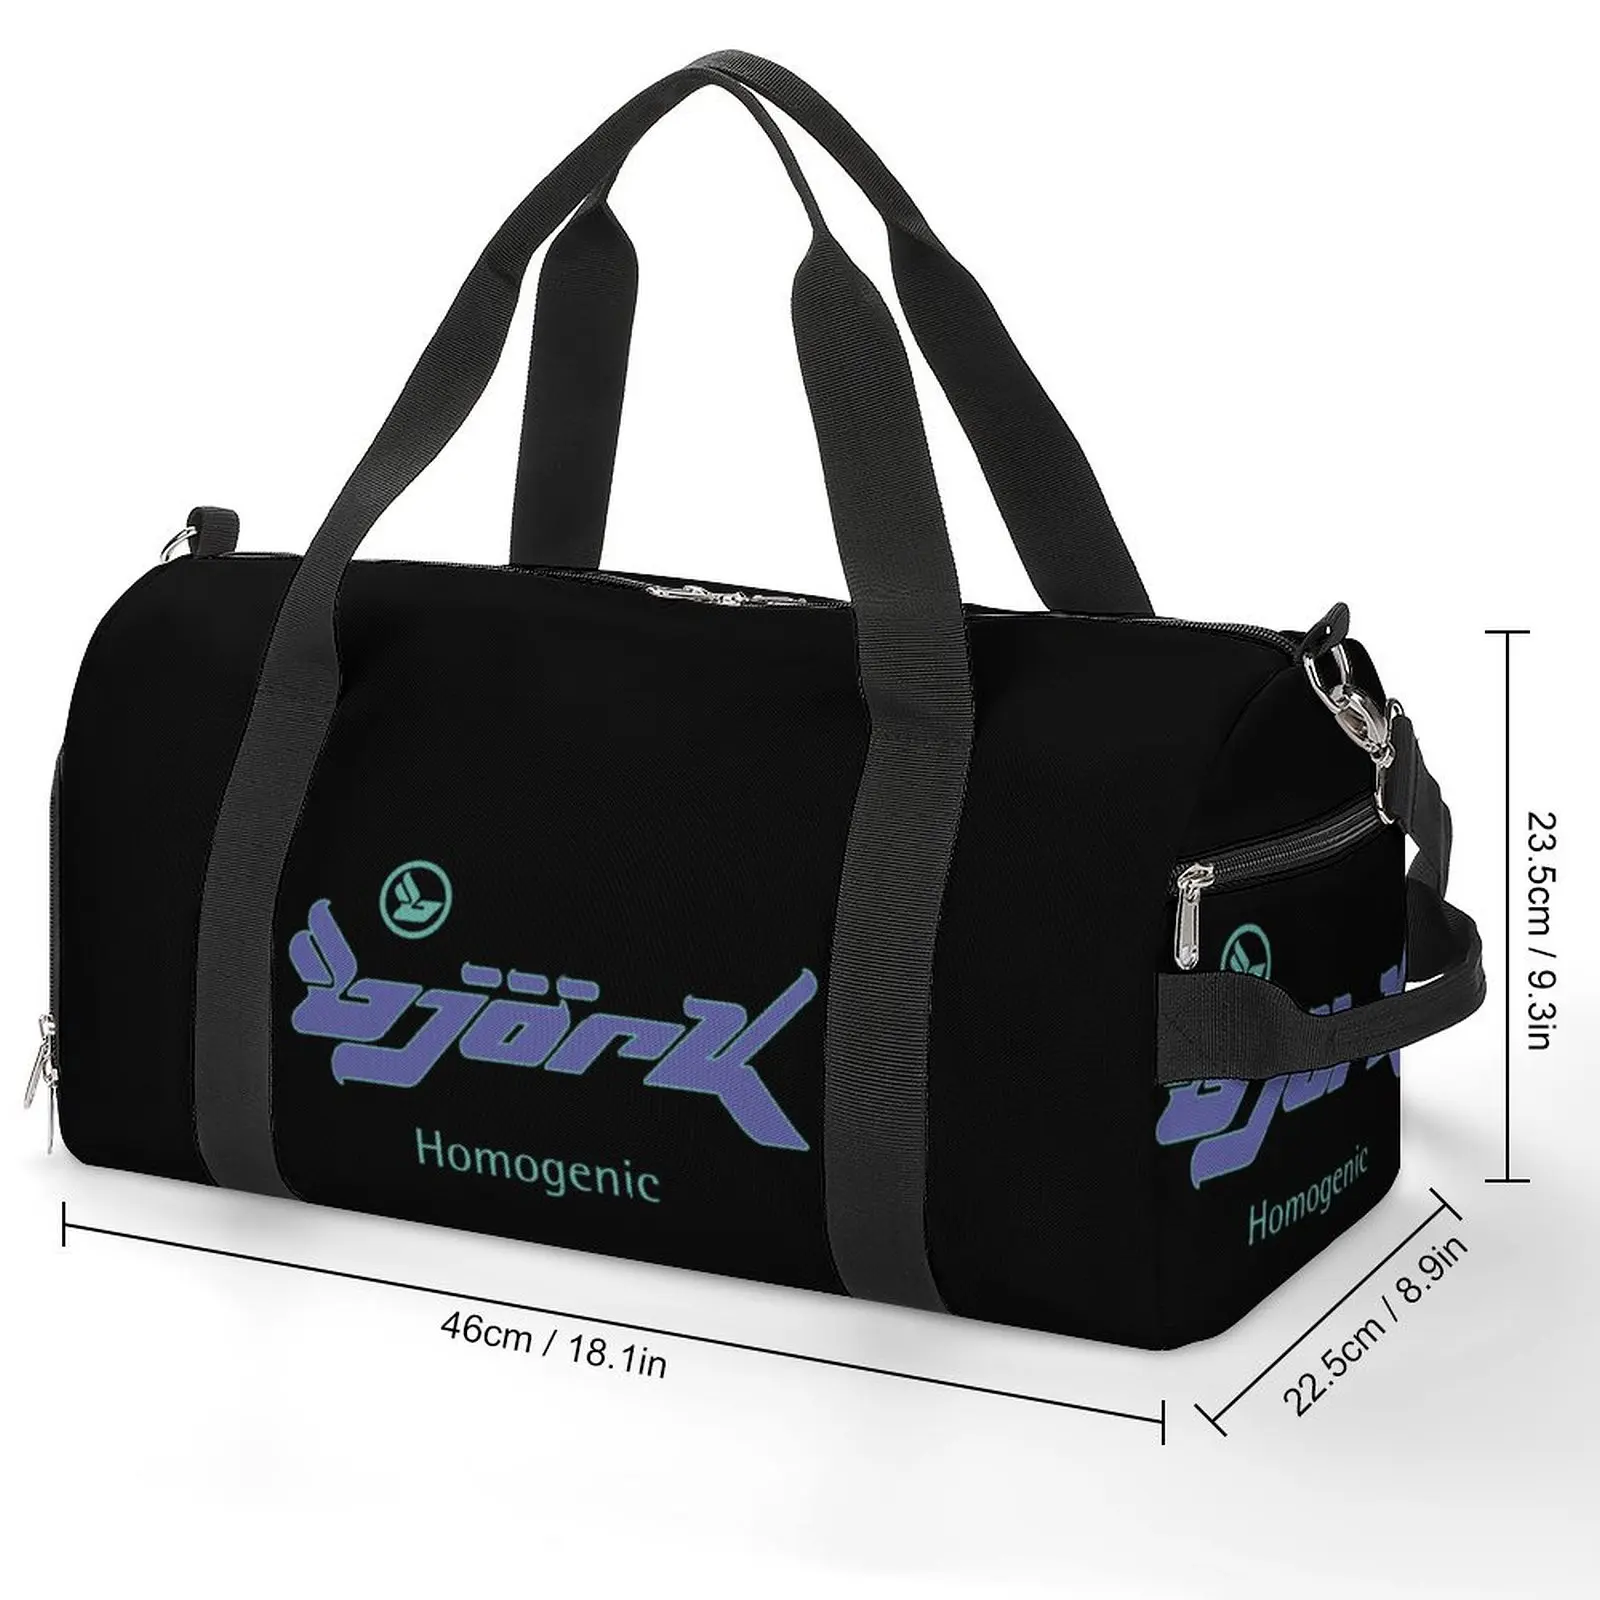 Графический Однородный логотип Bjork, спортивная сумка для путешествий, спортивные сумки для тренировок, дизайн пары, Большая графическая сумка для фитнеса, Оксфордские сумки1